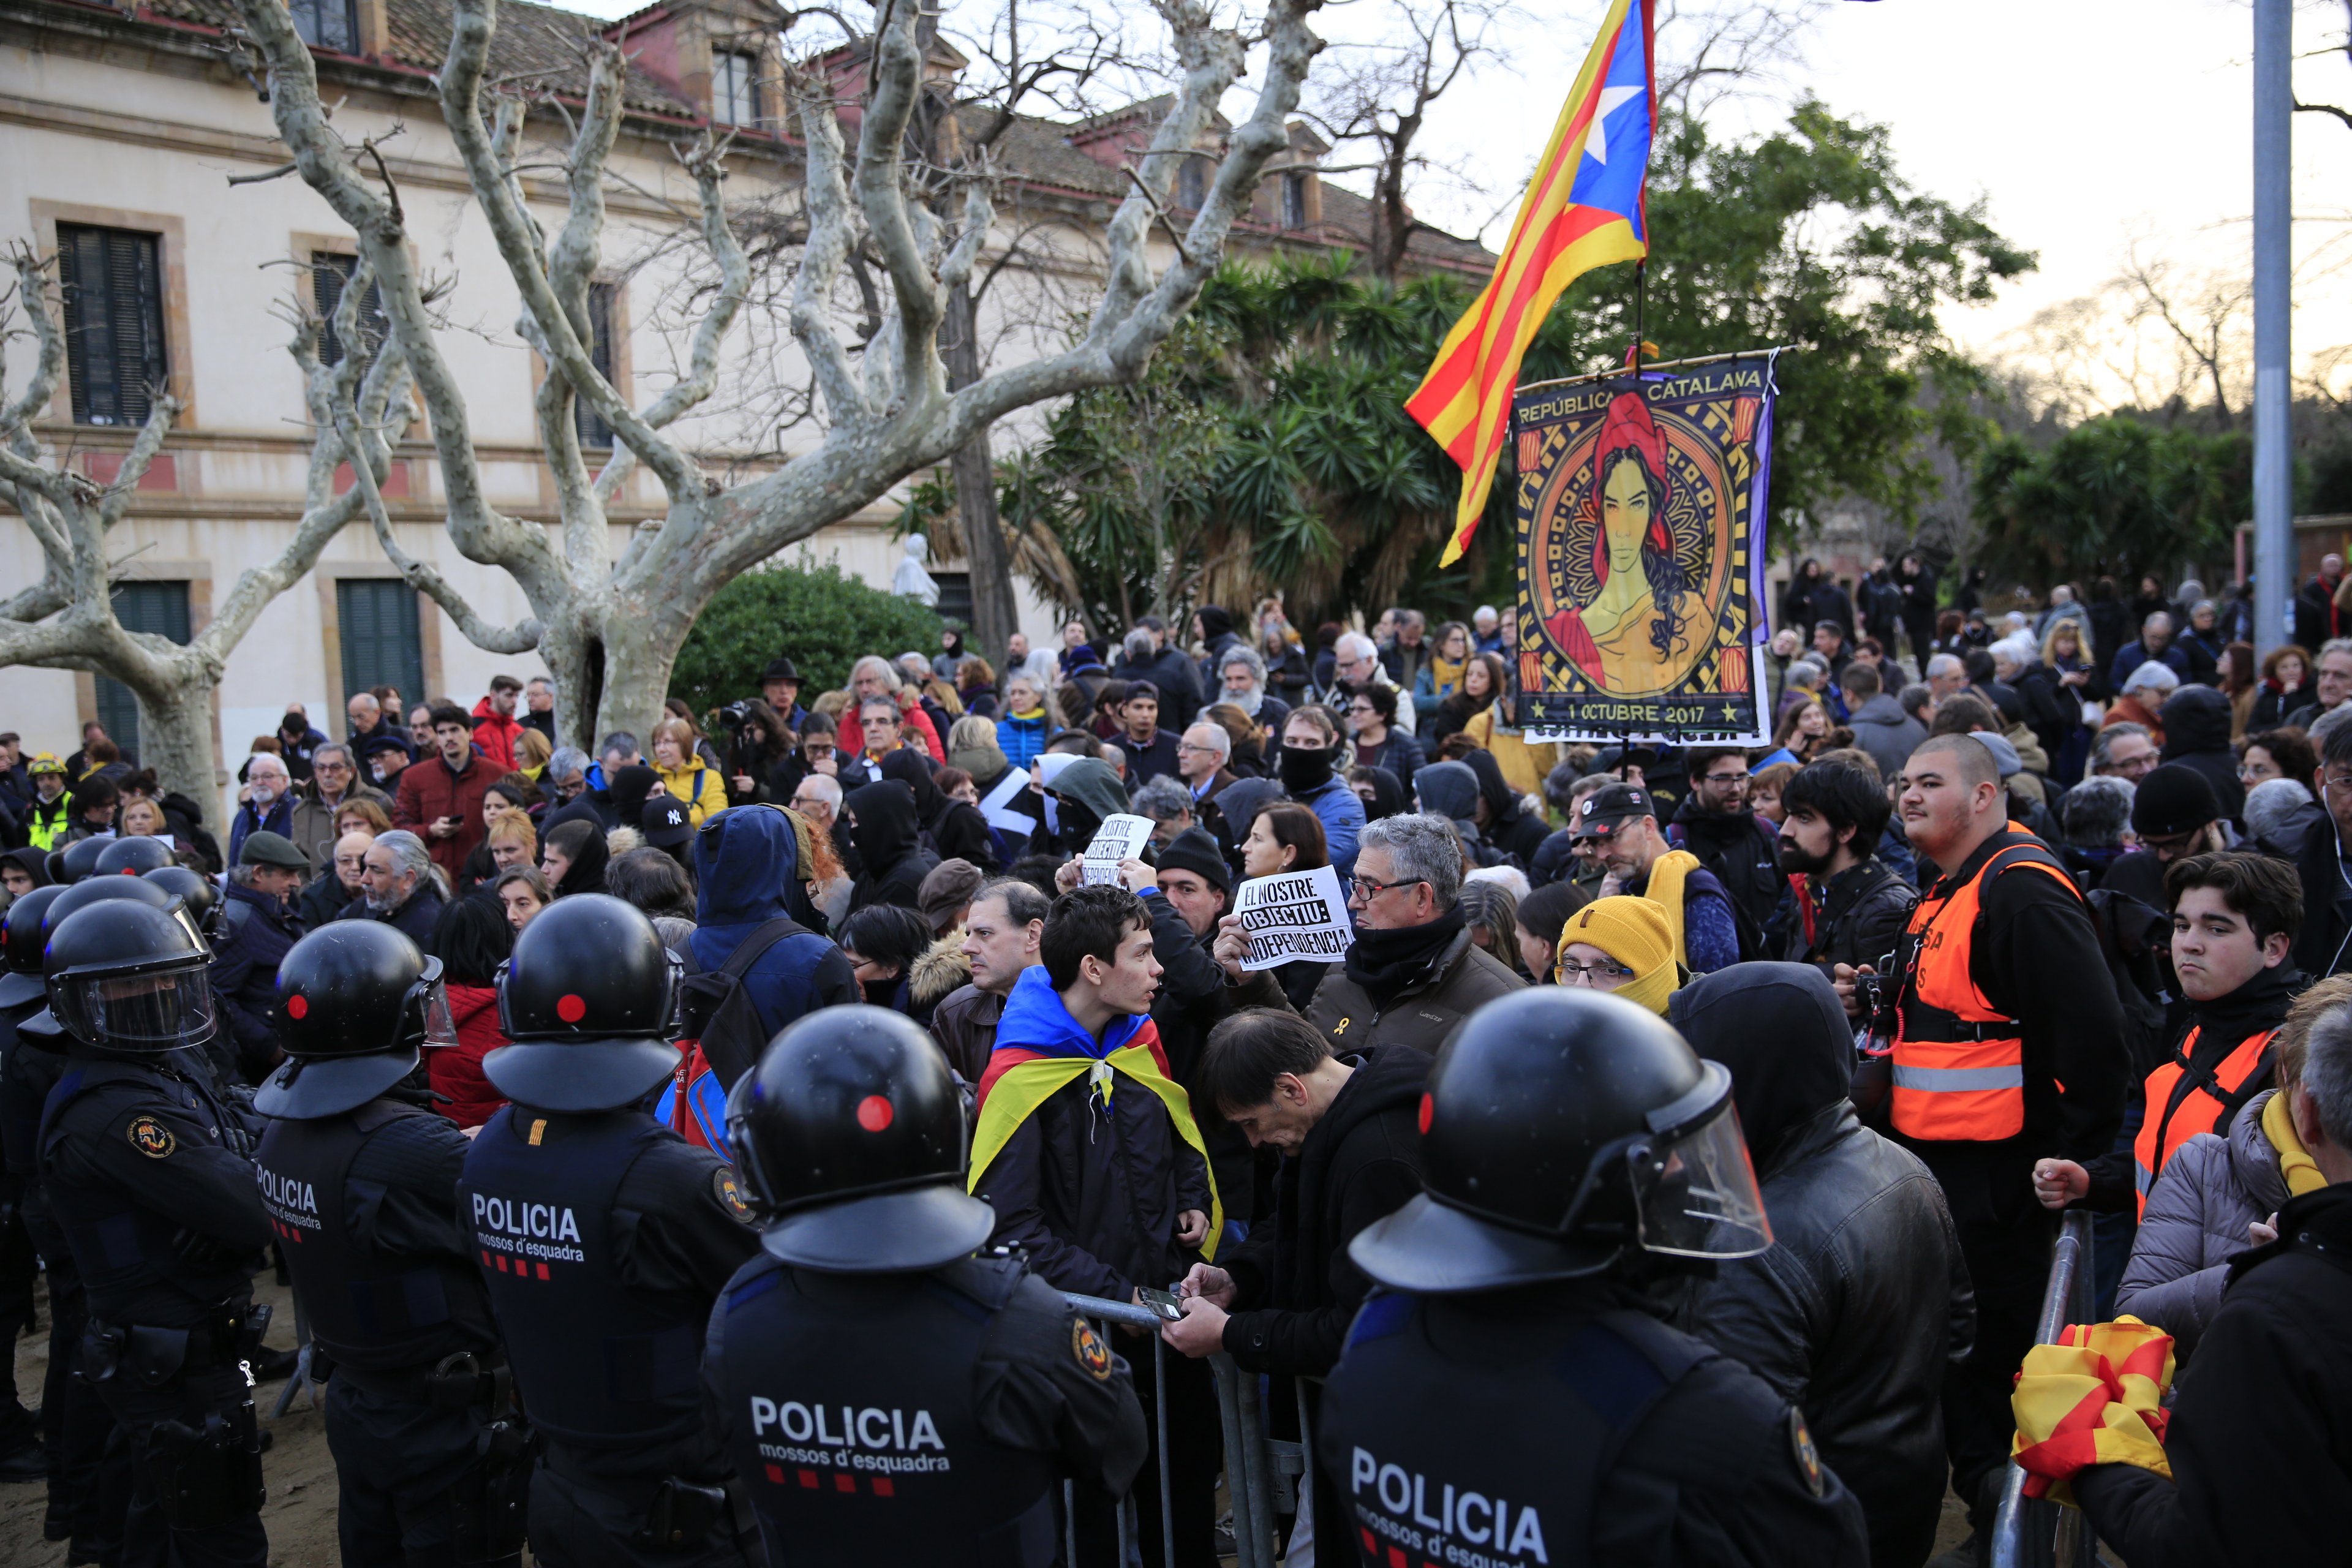 Els CDR convoquen davant el Parlament: "Obeïu el poble, independència"